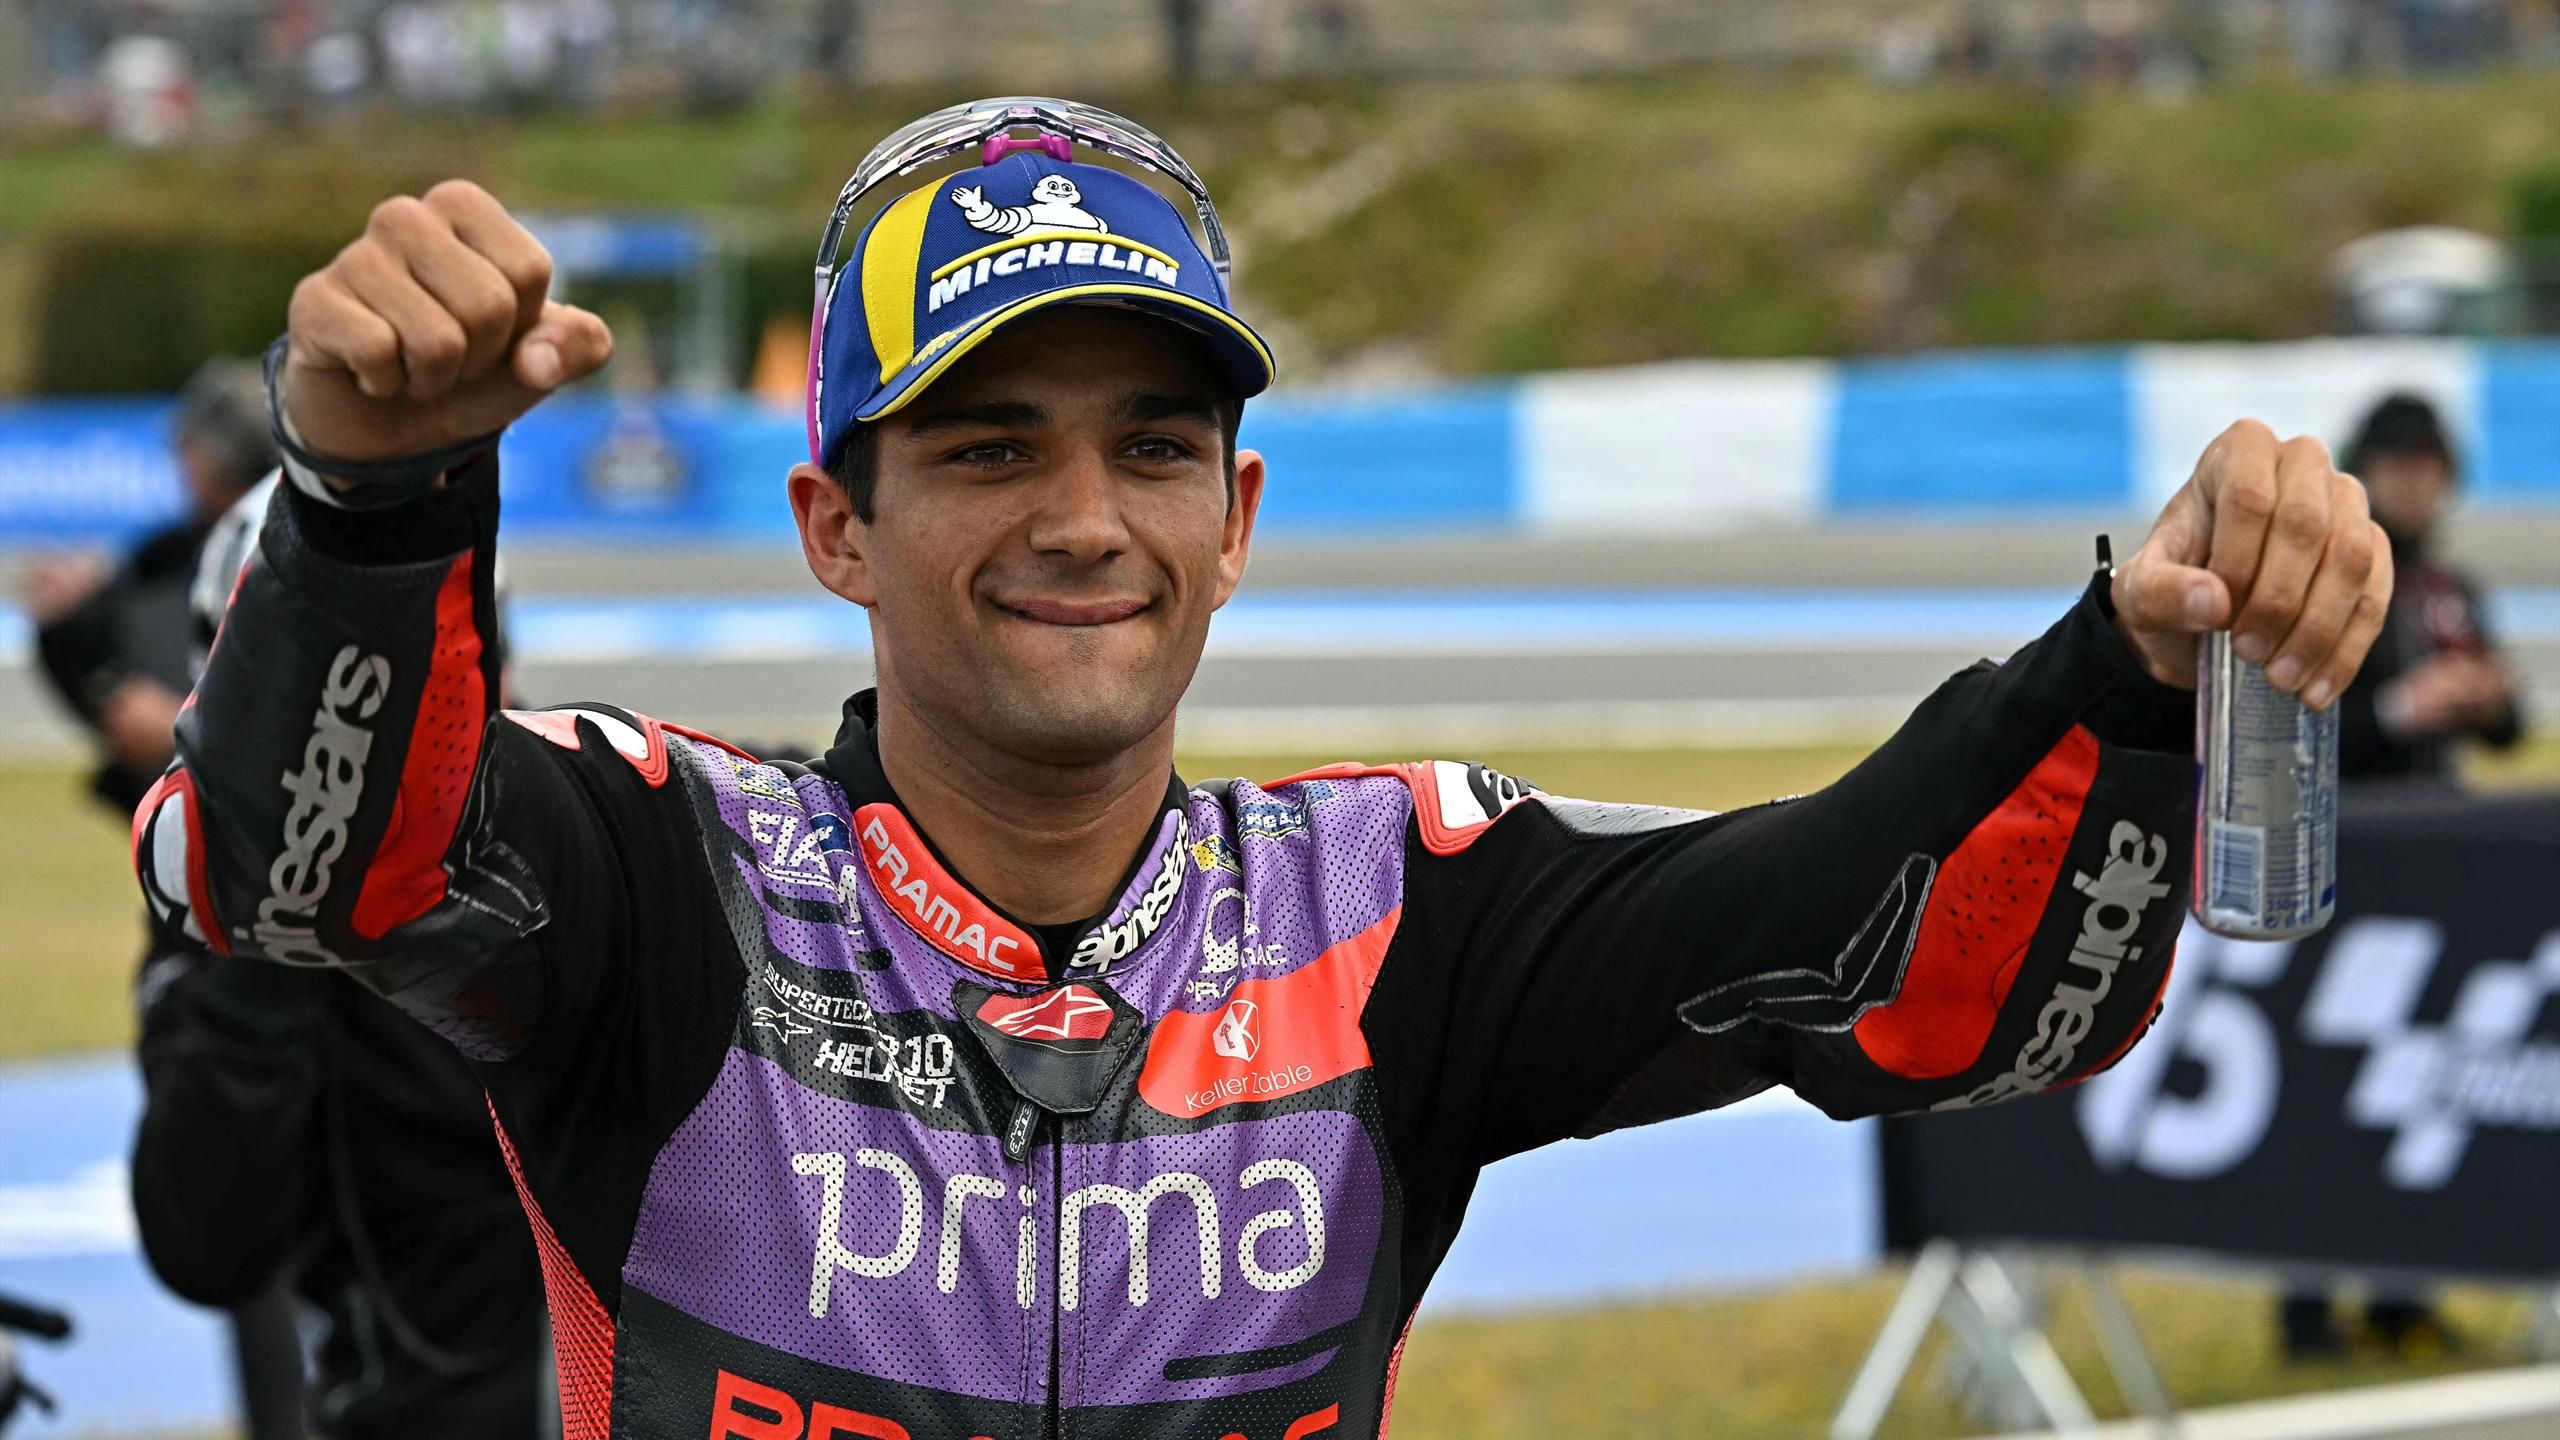 MotoGP: Jorge Martín se lleva la victoria en una accidentada carrera Sprint en el Gran Premio de España, Pedro Acosta segundo